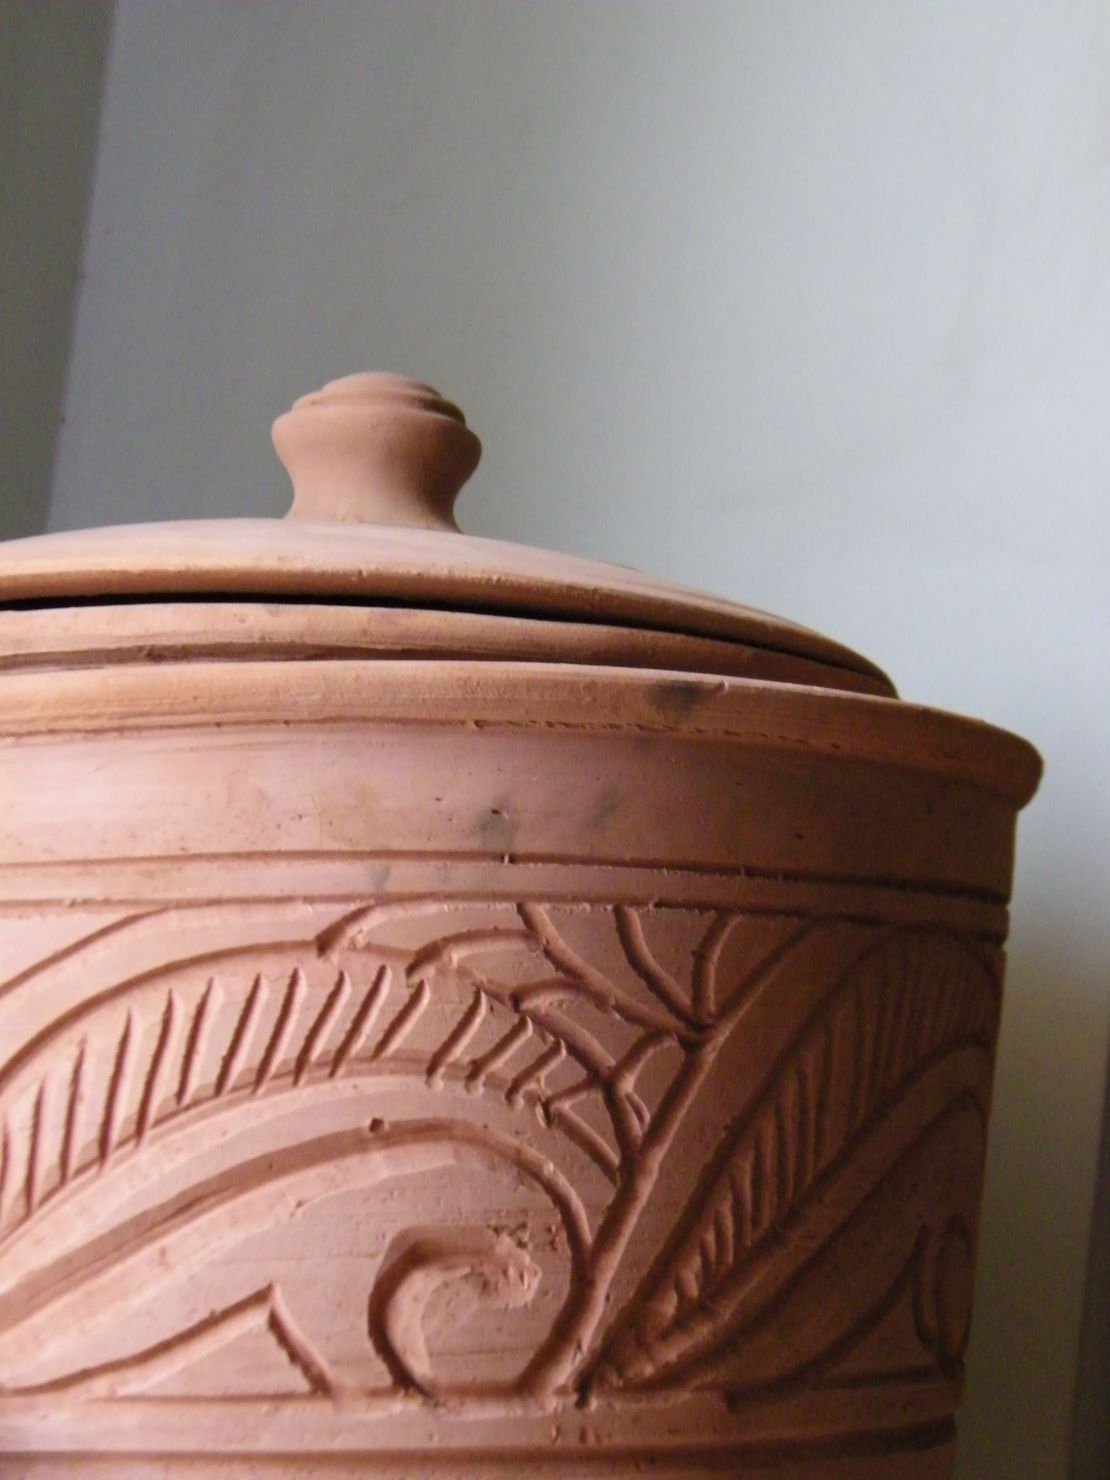 Egyptian potter Adel El-Dib's clay cooler.